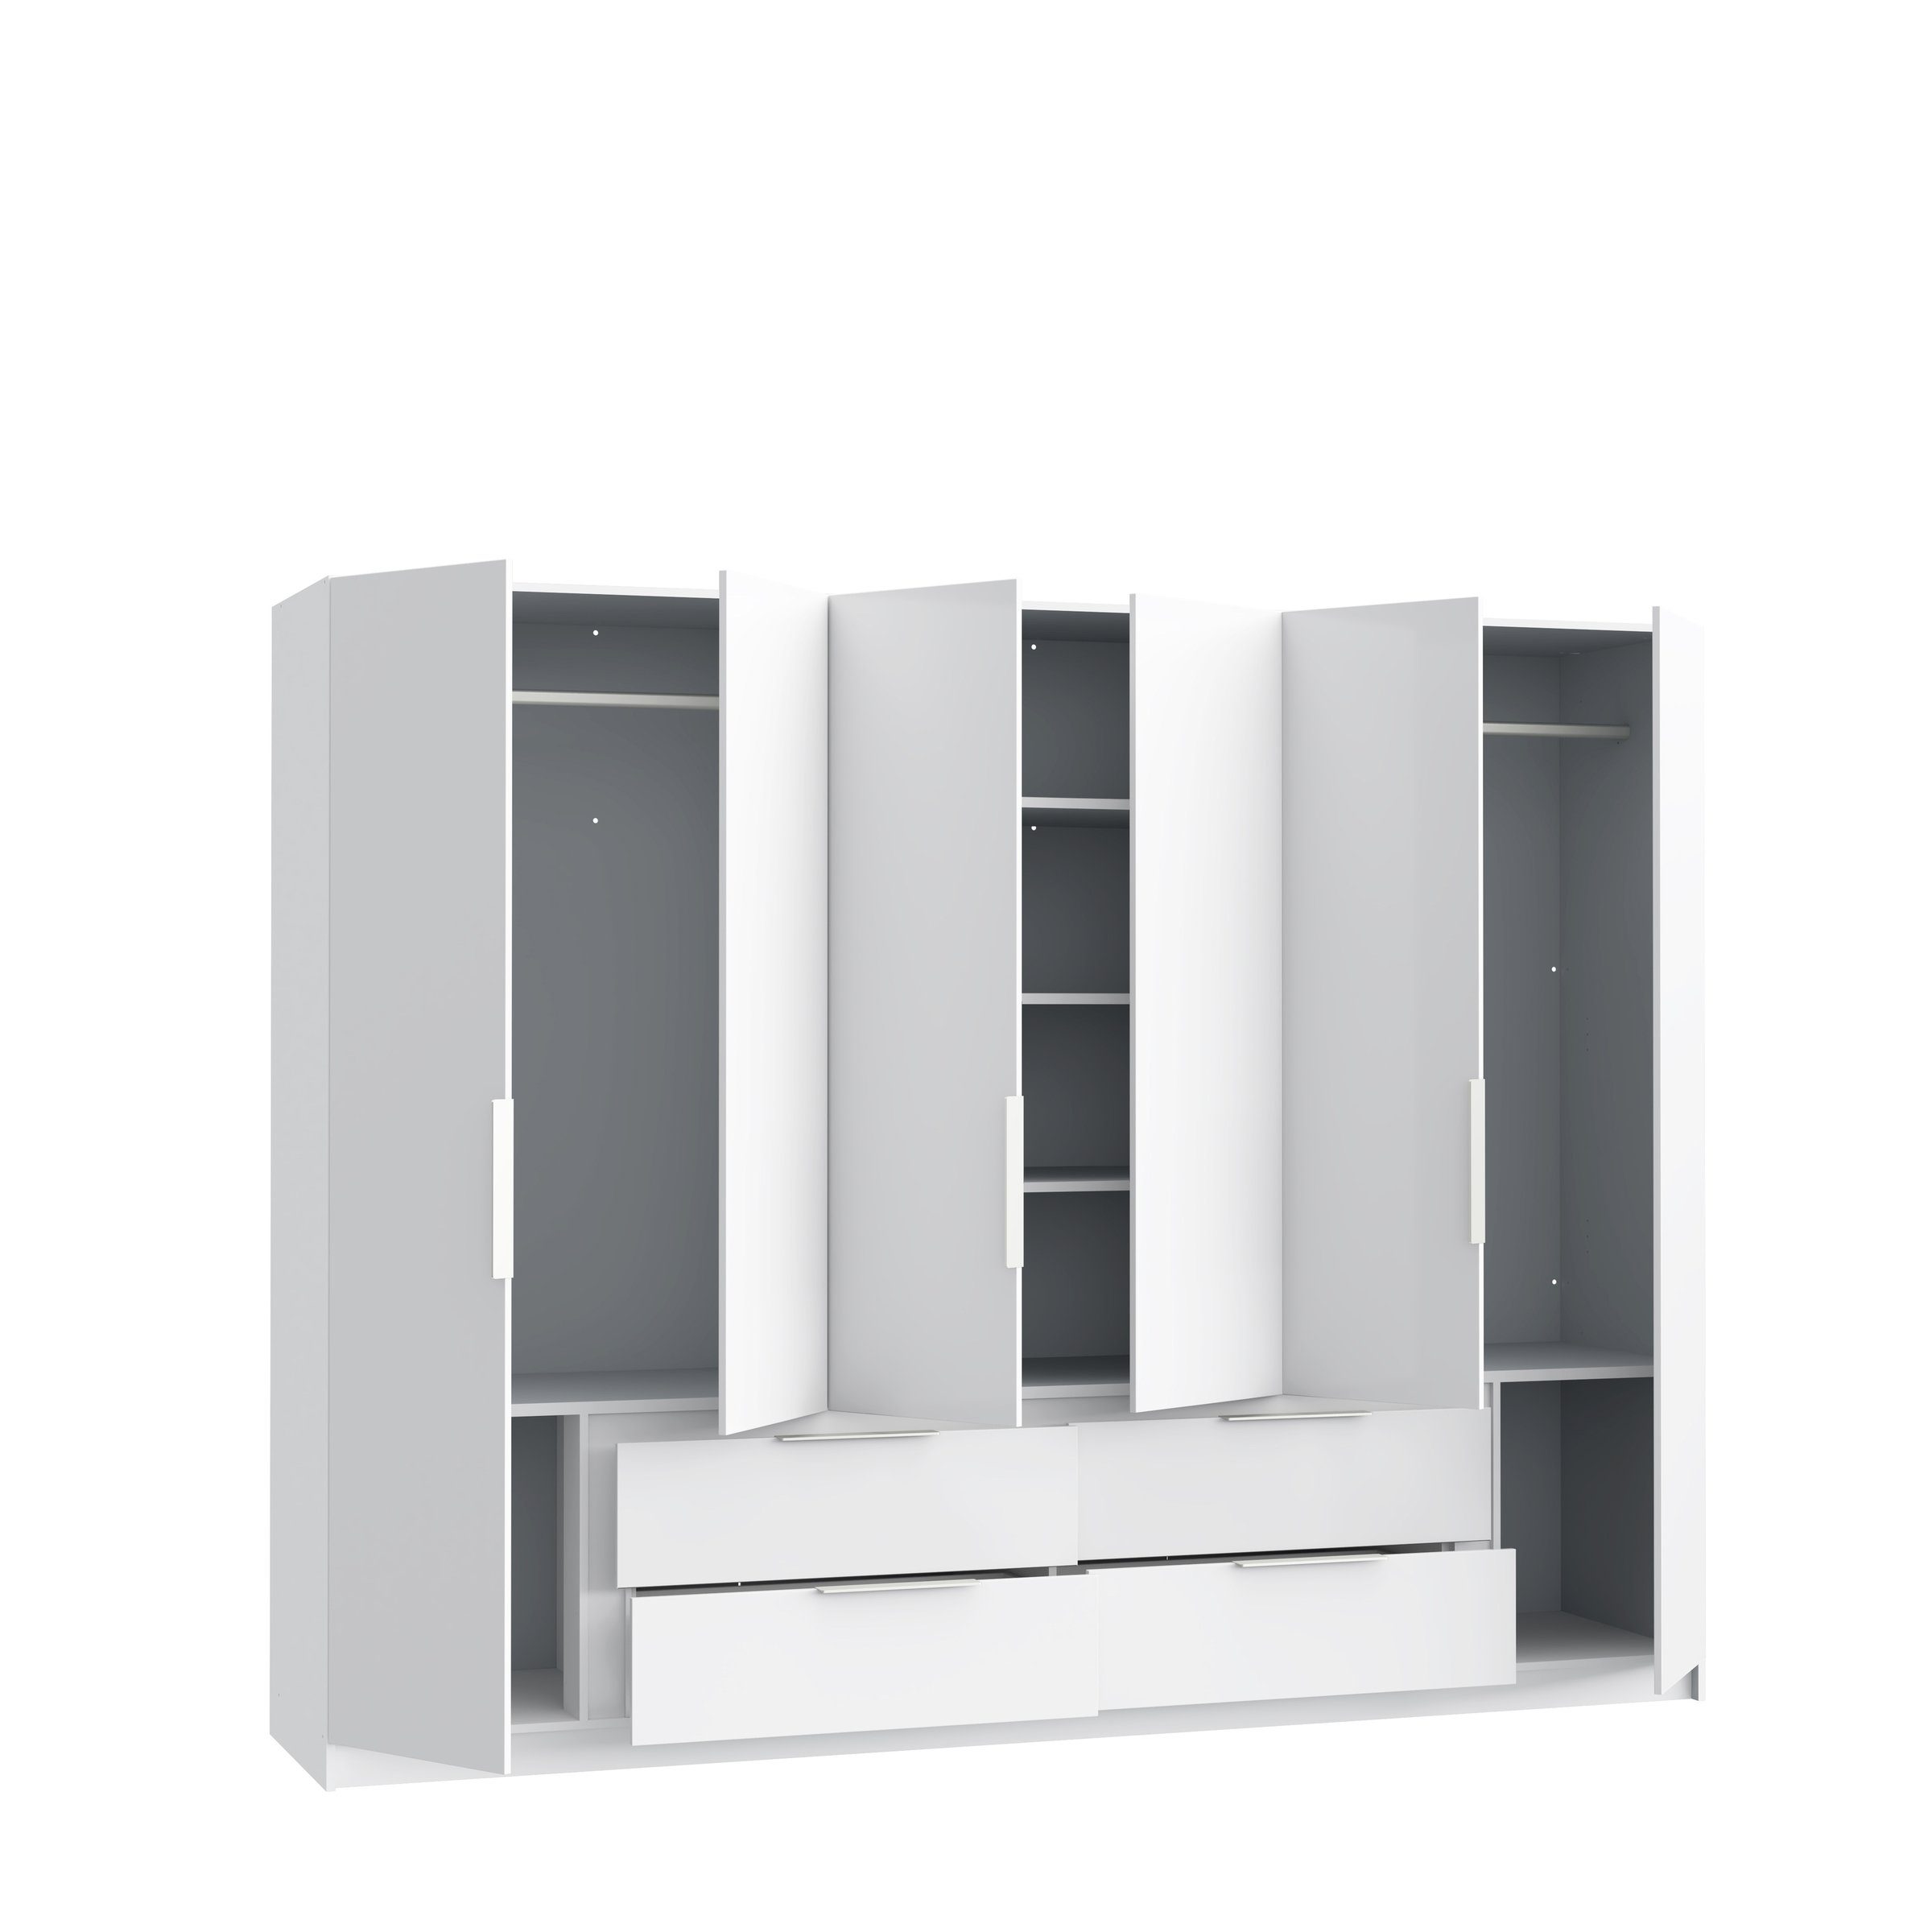 (BxHxT: Kleiderschrank Türen in mit cm) Weiss Luano 269,7x210,5x60 4 und 6 freiraum Schubladen